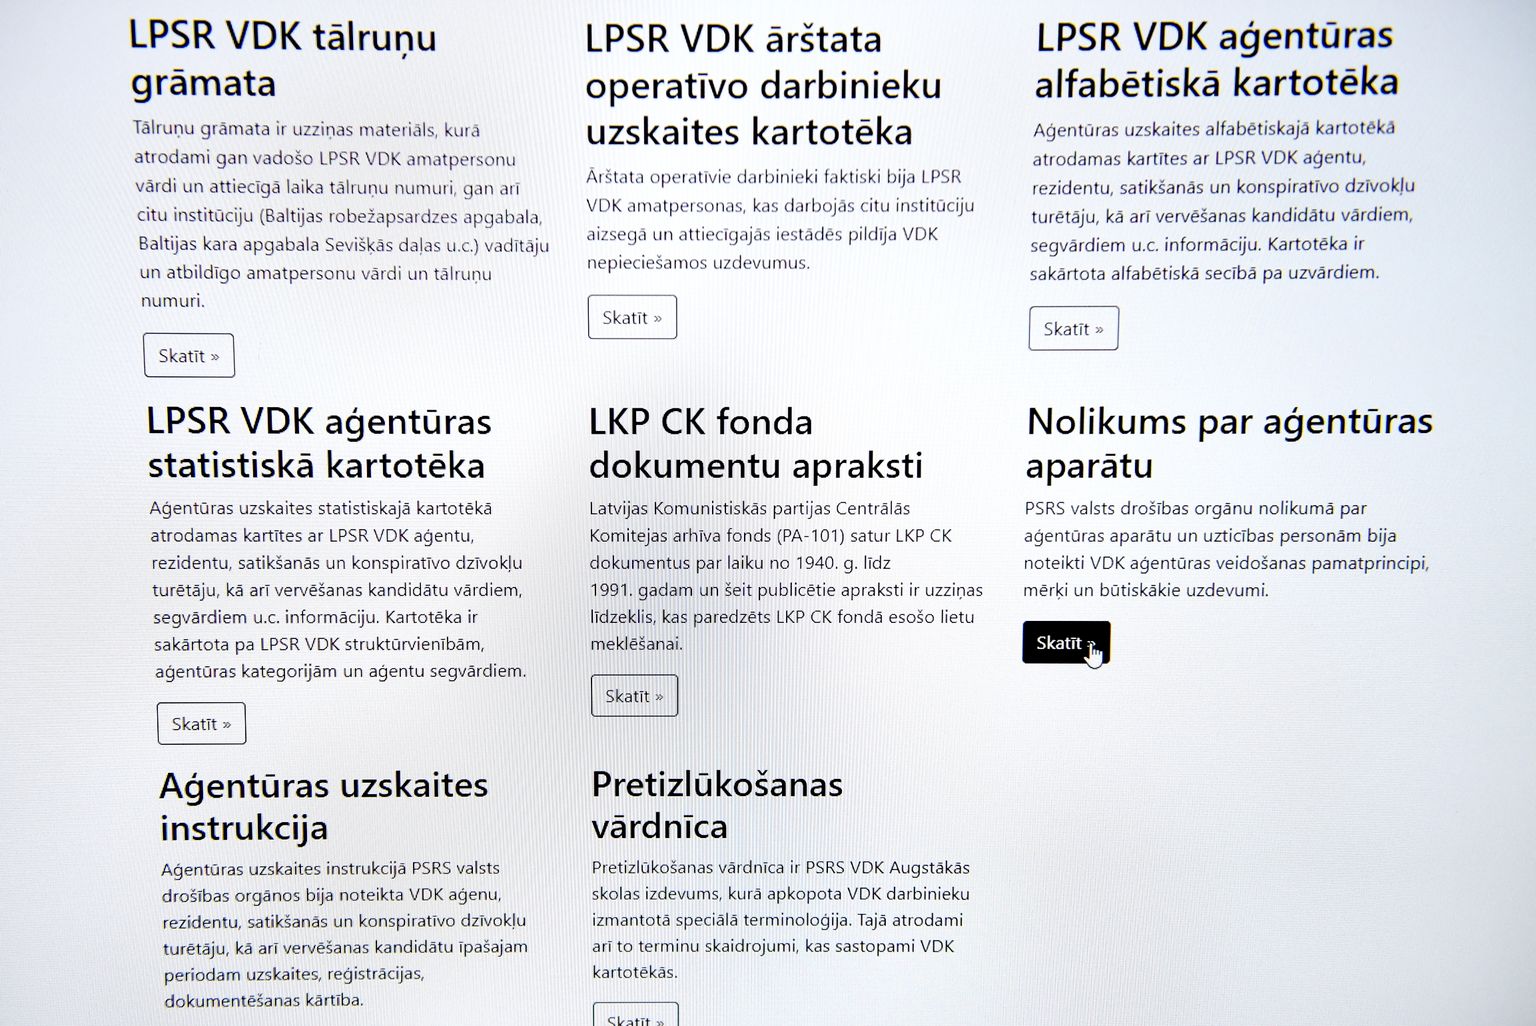 Daļa no bijušās Valsts drošības komitejas (VDK) dokumentiem jeb tā dēvētajiem "čekas maisiem" publiskota interneta vietnē "kgb.arhivi.lv".